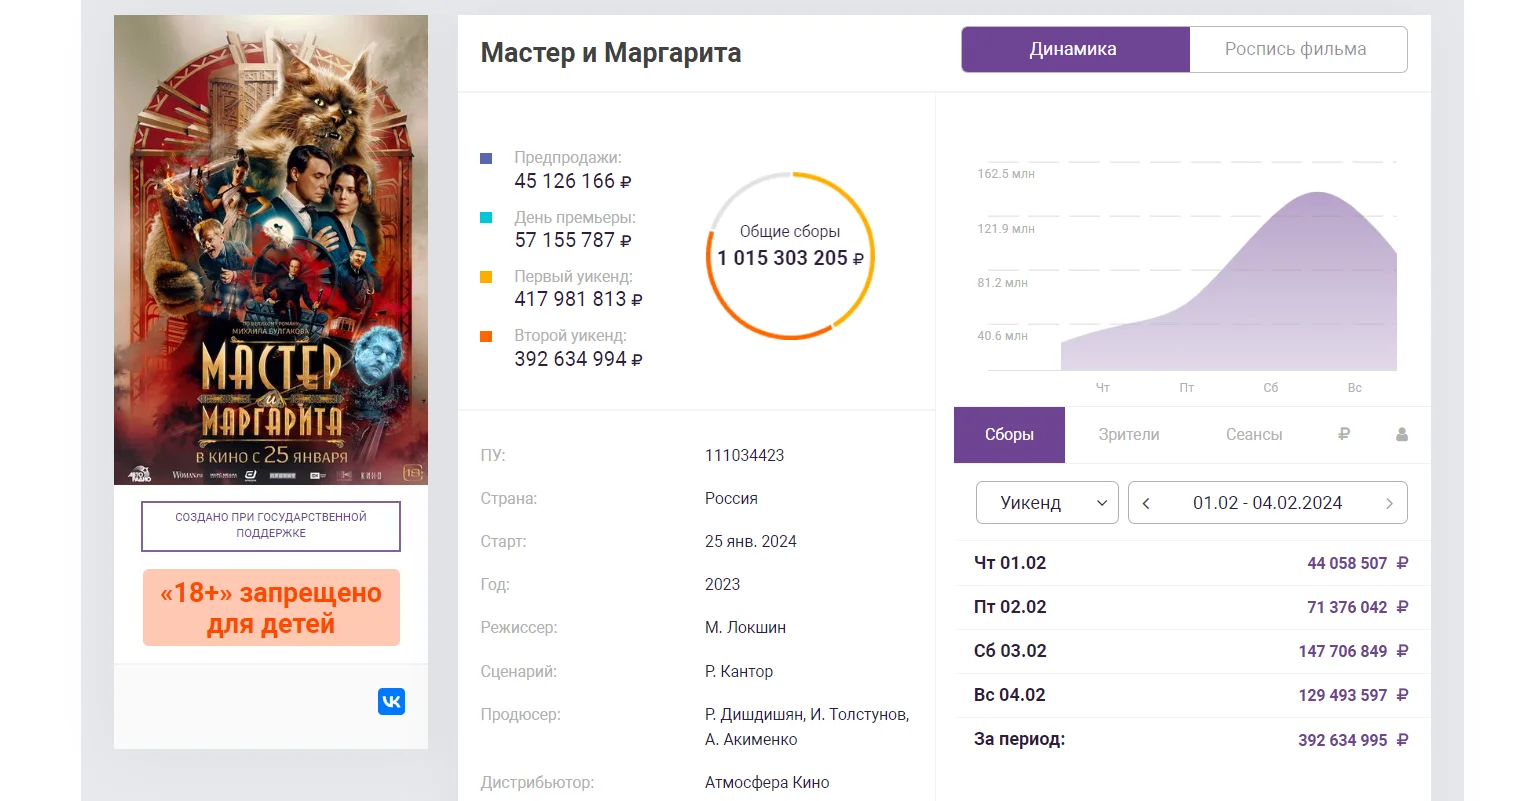 Сборы нового фильма «Мастер и Маргарита» в России превысили 1 млрд рублей - фото 1